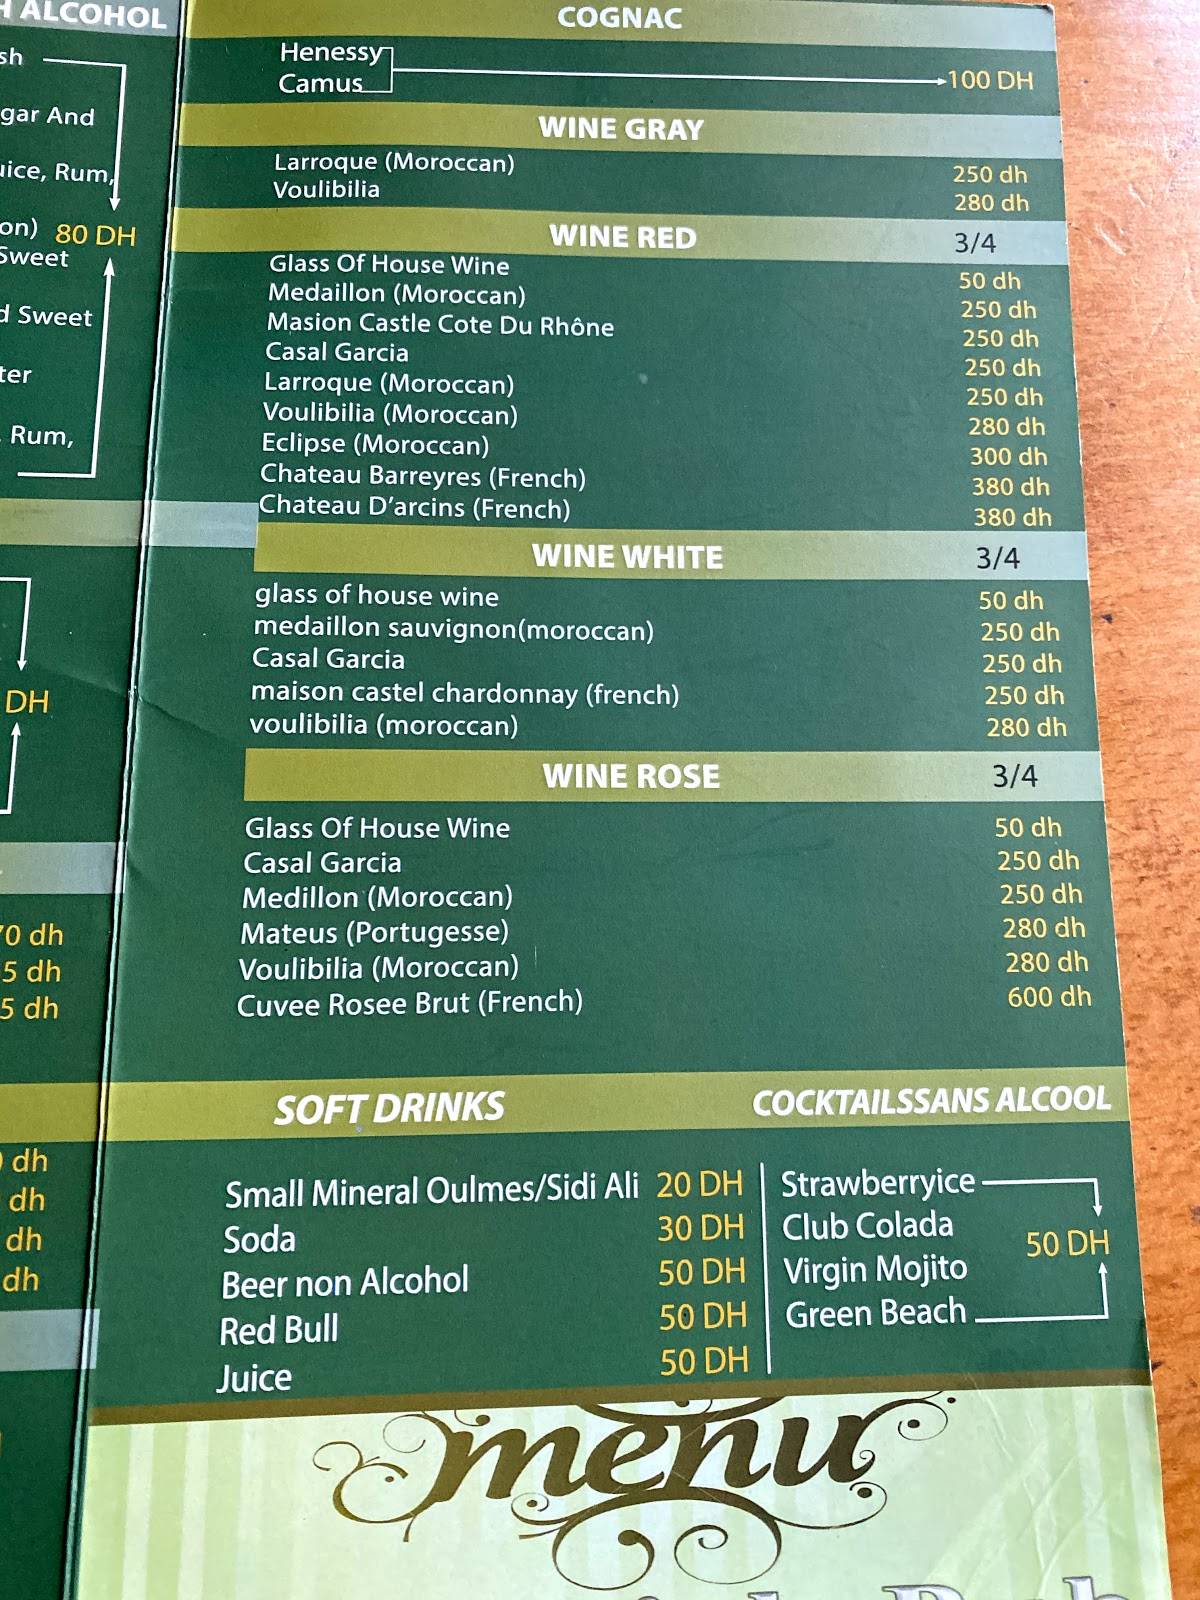 Irish pub menu 4